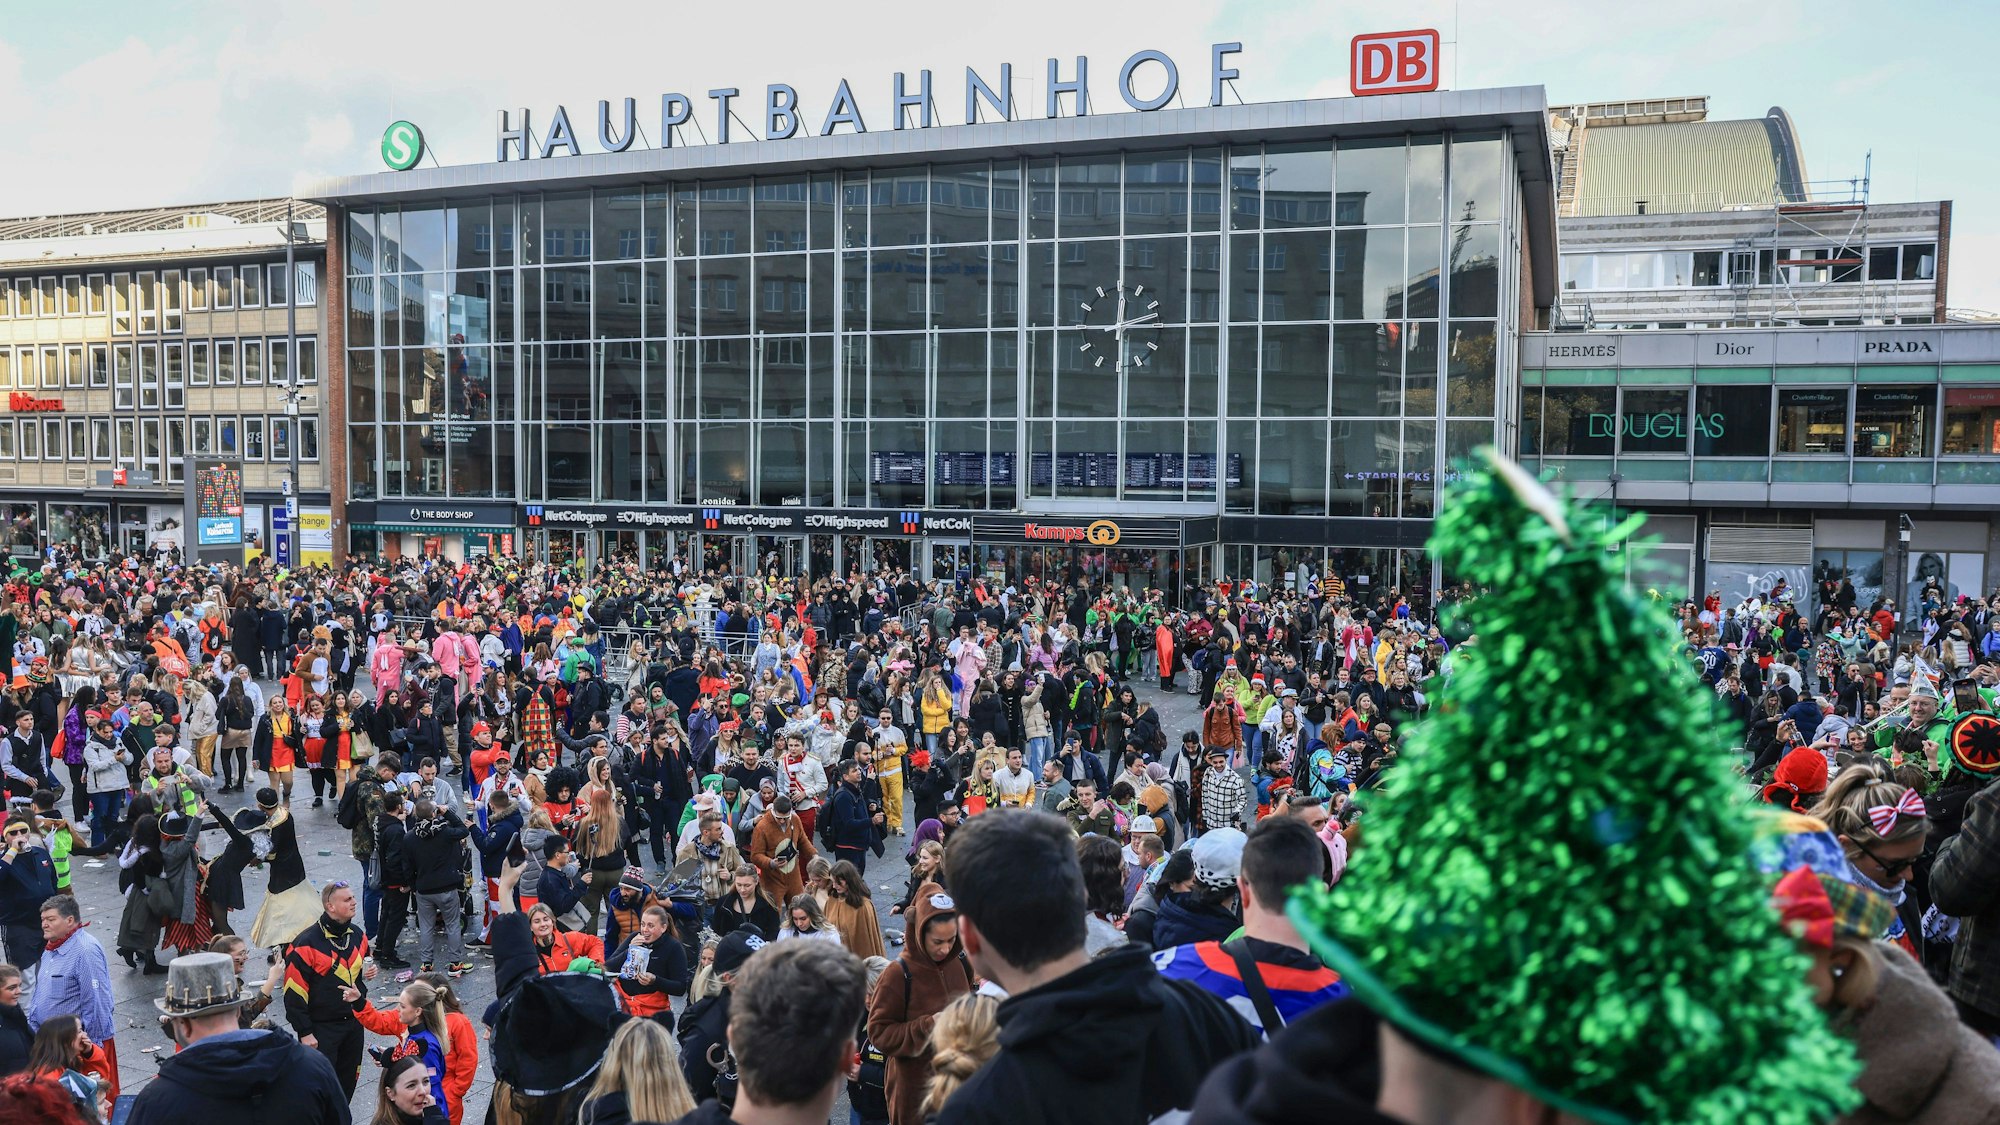 Karnevalisten stehen dicht gedrängt vor dem Hauptbahnhof.